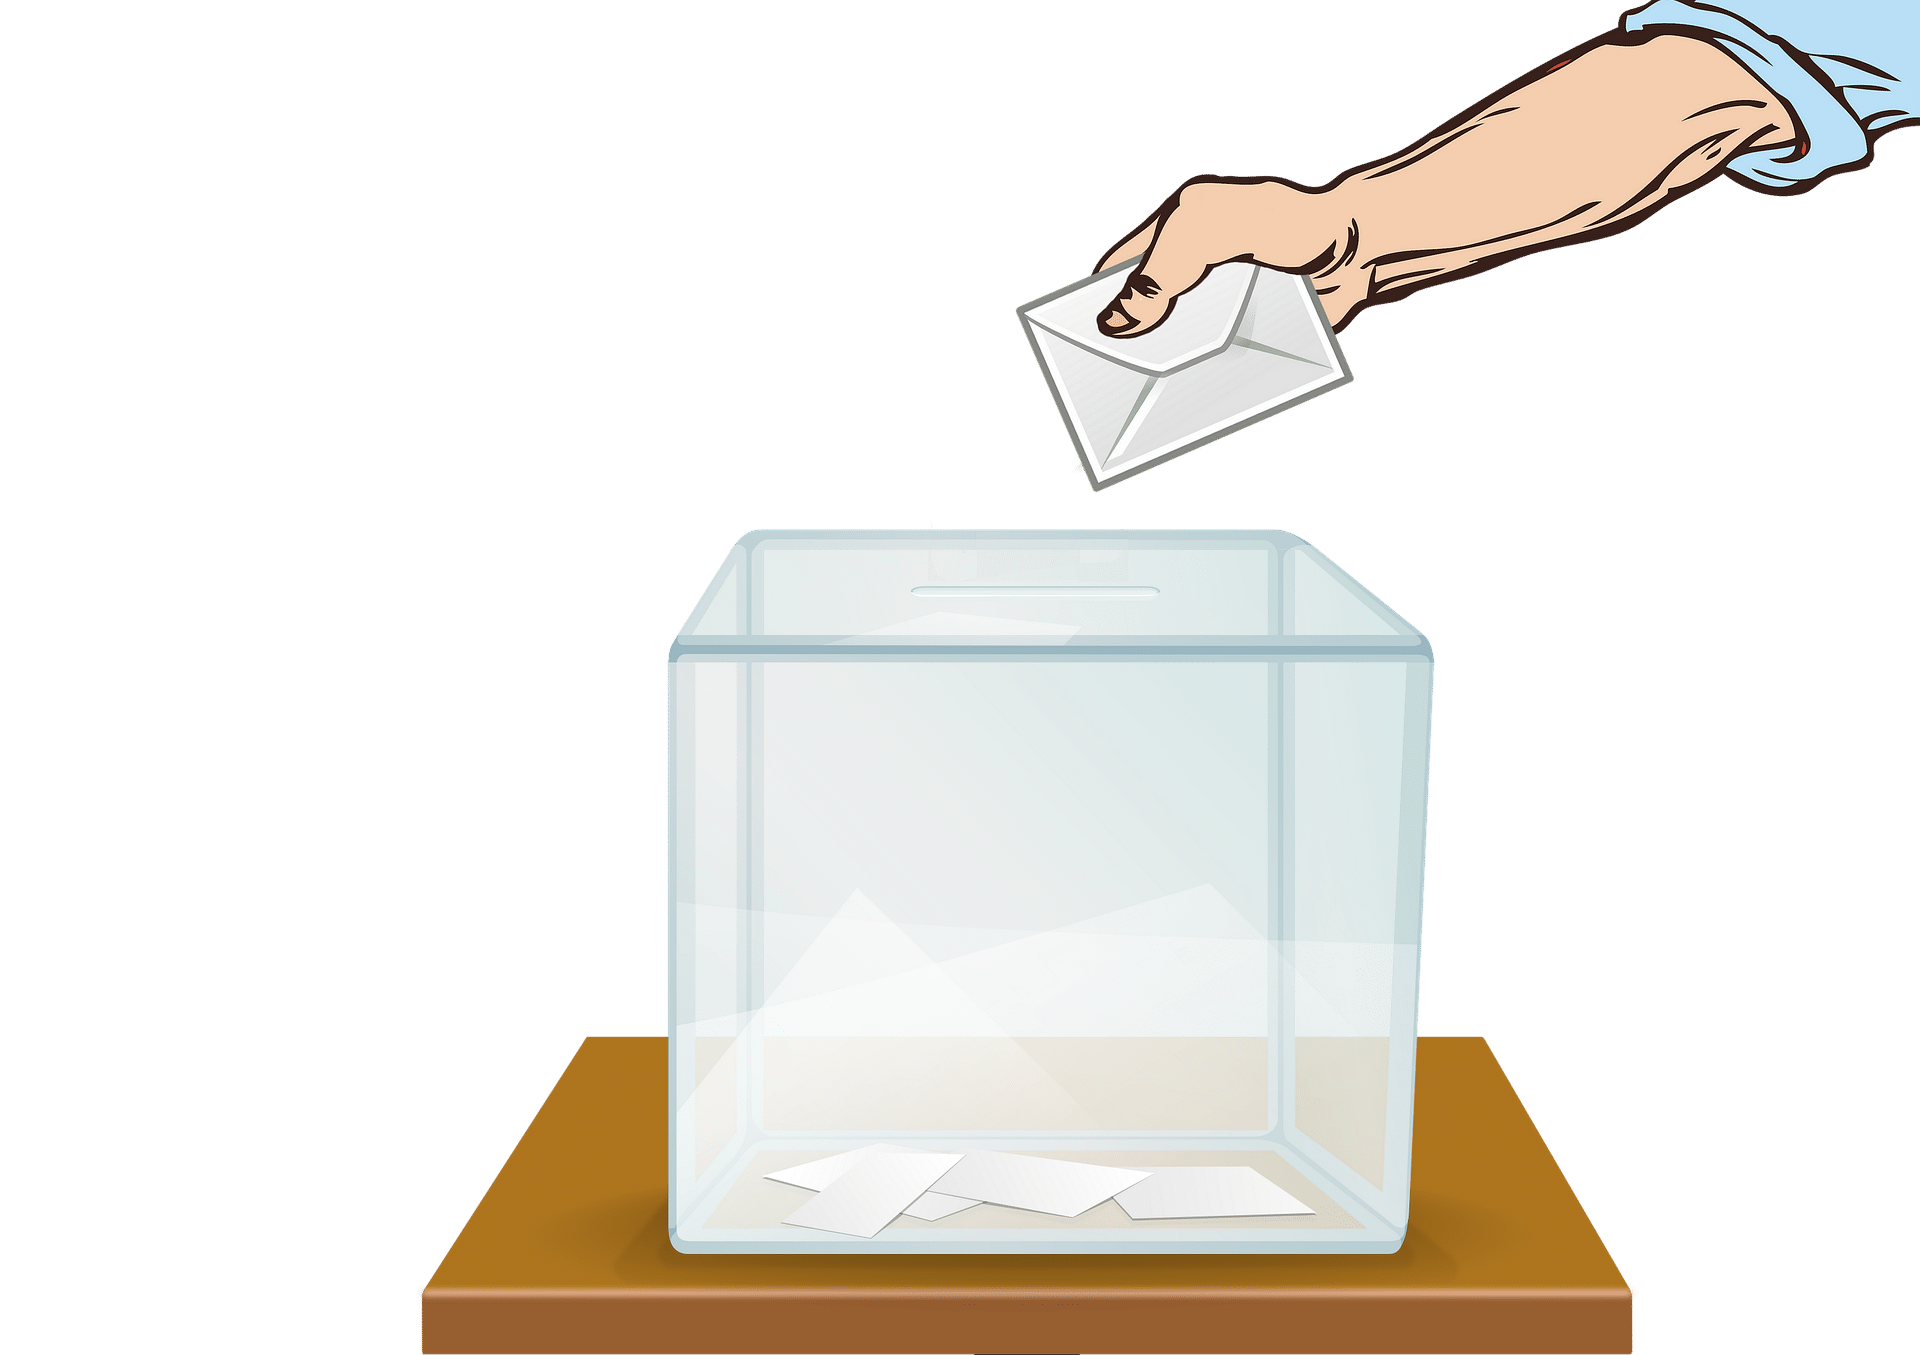 gläserne Wahlurne mit Wahlzettel und Hand